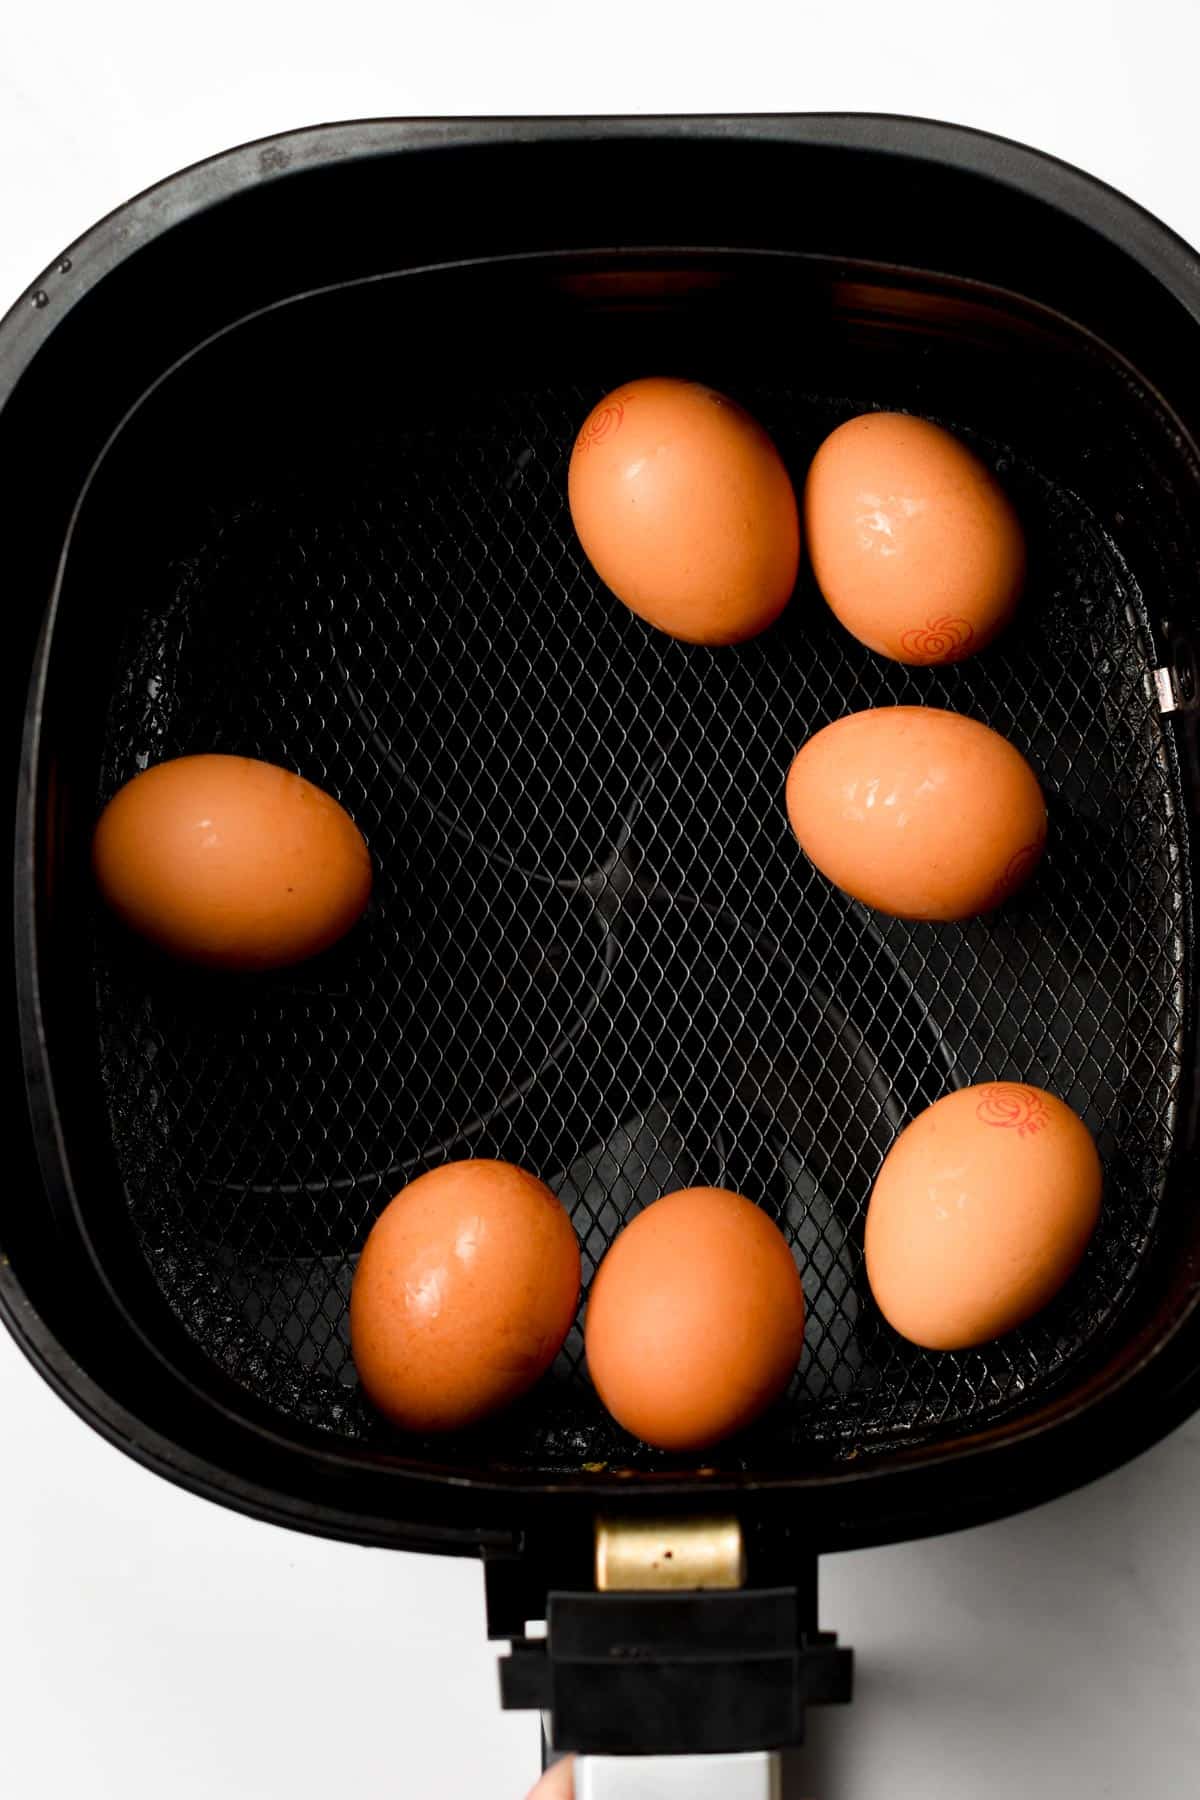 Preparing eggs in an air fryer